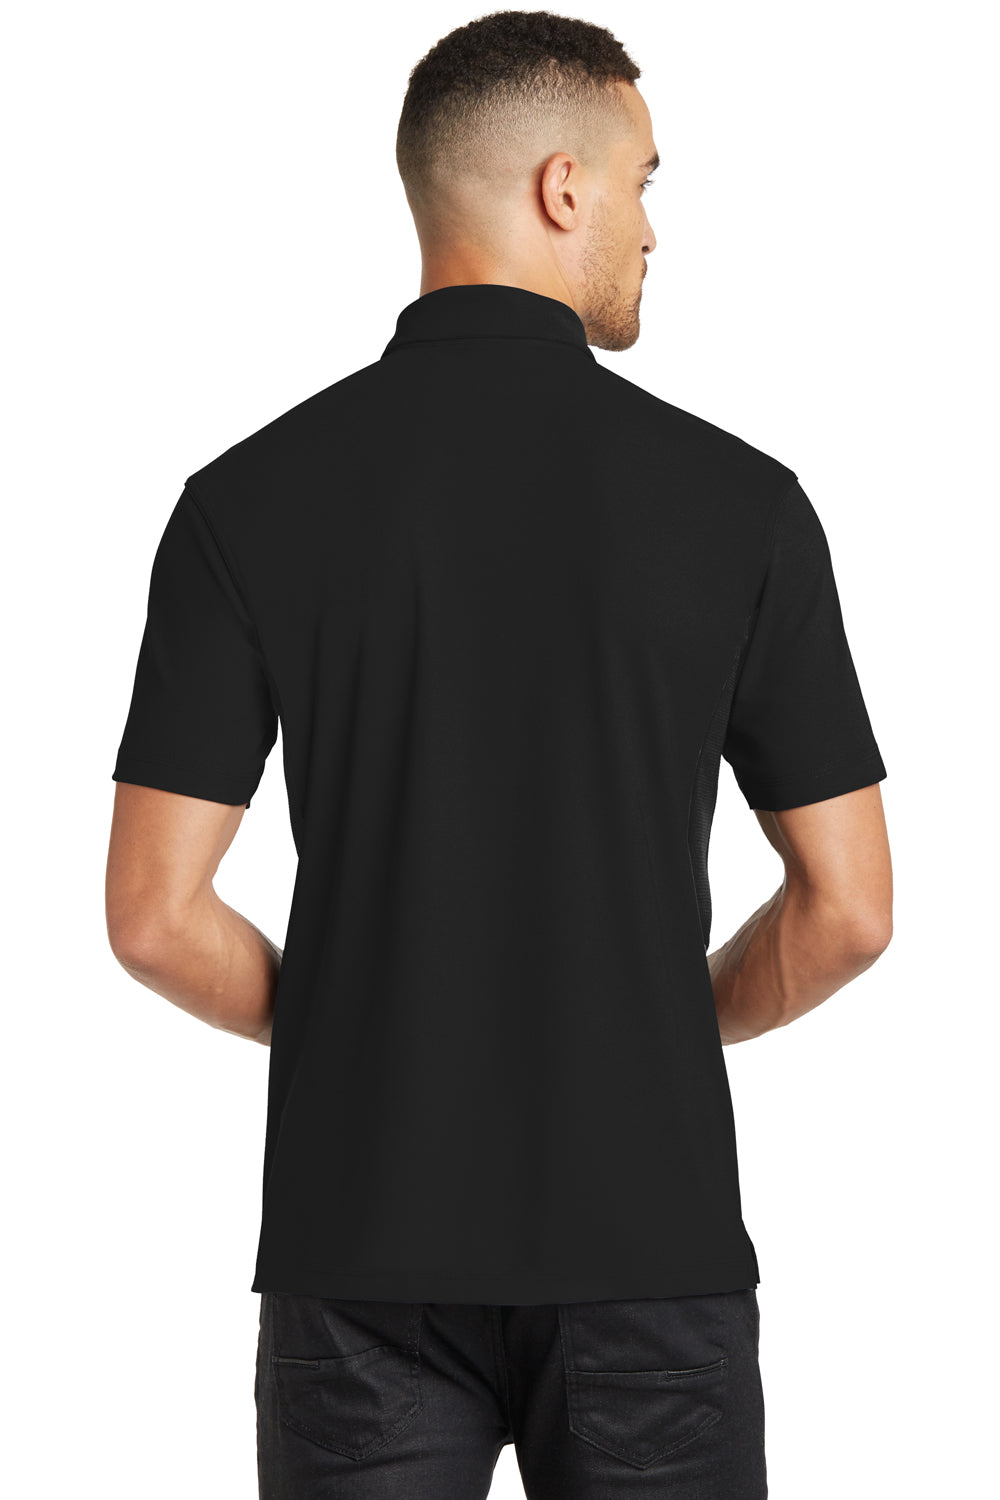 Ogio OG102 Mens Accelerator Moisture Wicking Short Sleeve Polo Shirt w/ Pocket Black Back